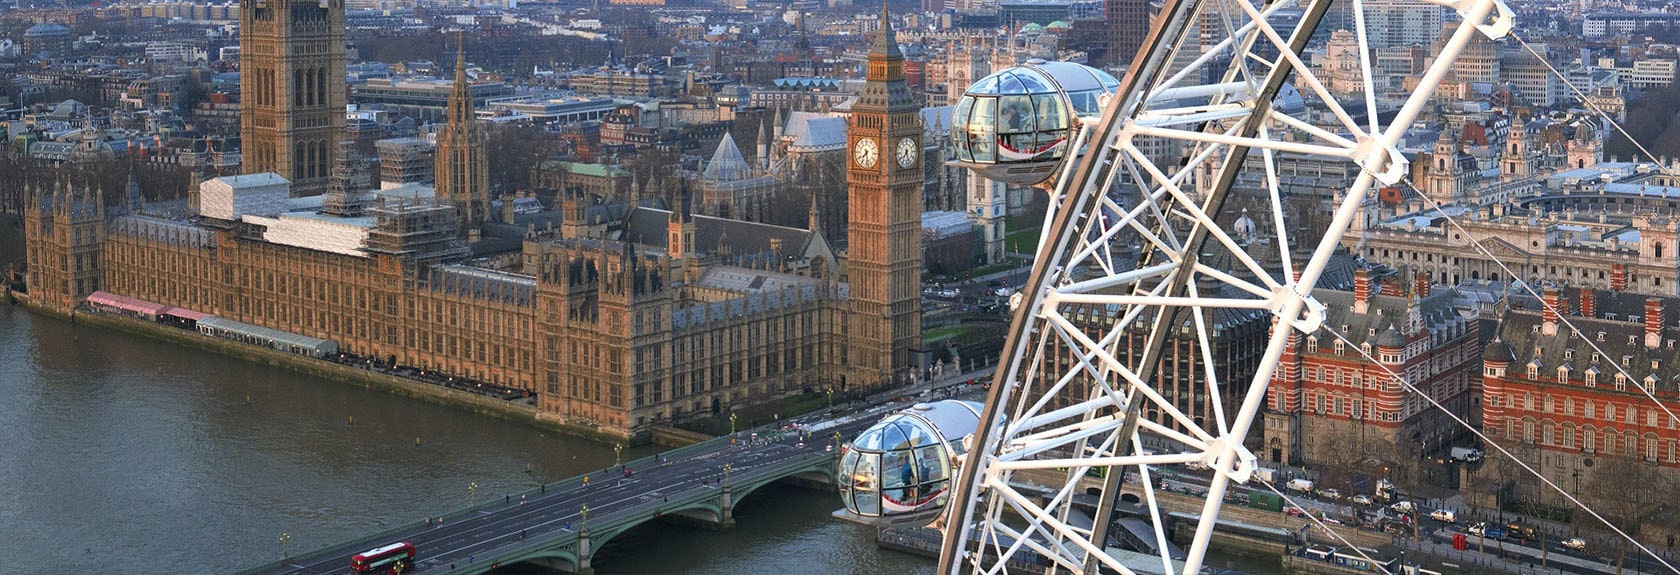 Na margem sul do Tamisa, em frente ao Westminster Palace e no centro de Londres está a famosa roda gigante The London Eye